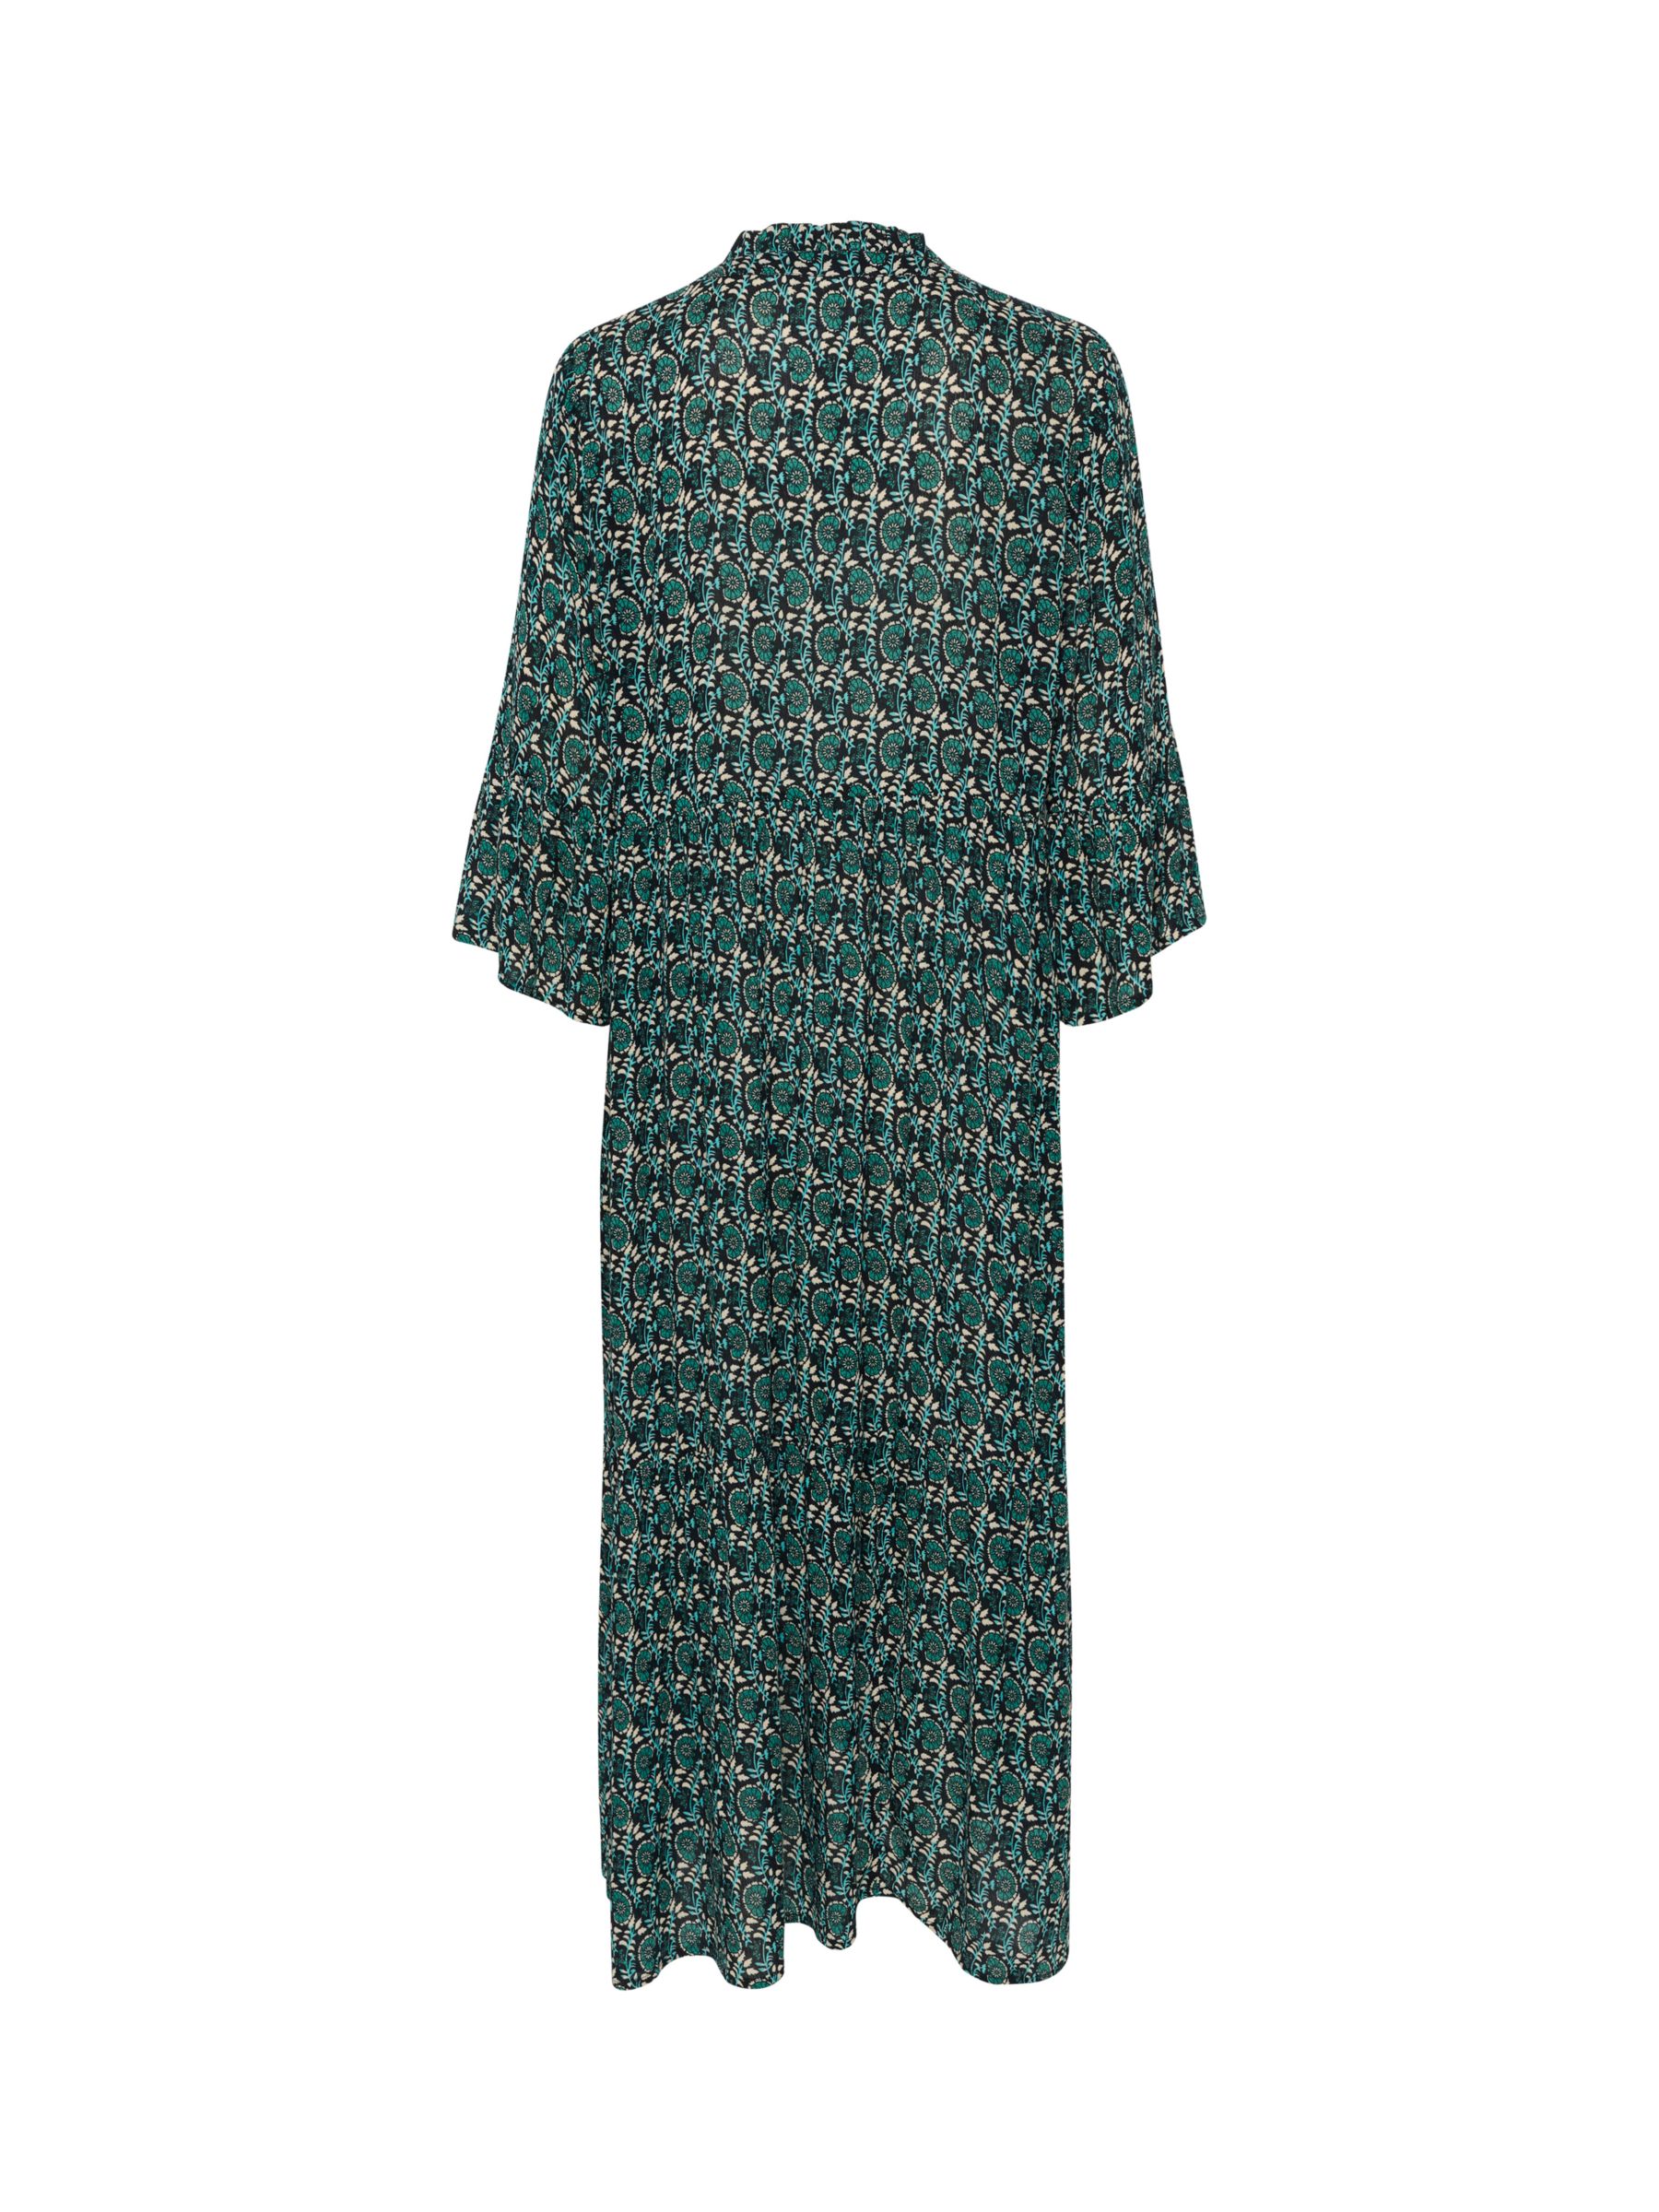 Buy KAFFE Karina Ecovero Viscose Amber Dress, Green Flower & Leaf Online at johnlewis.com